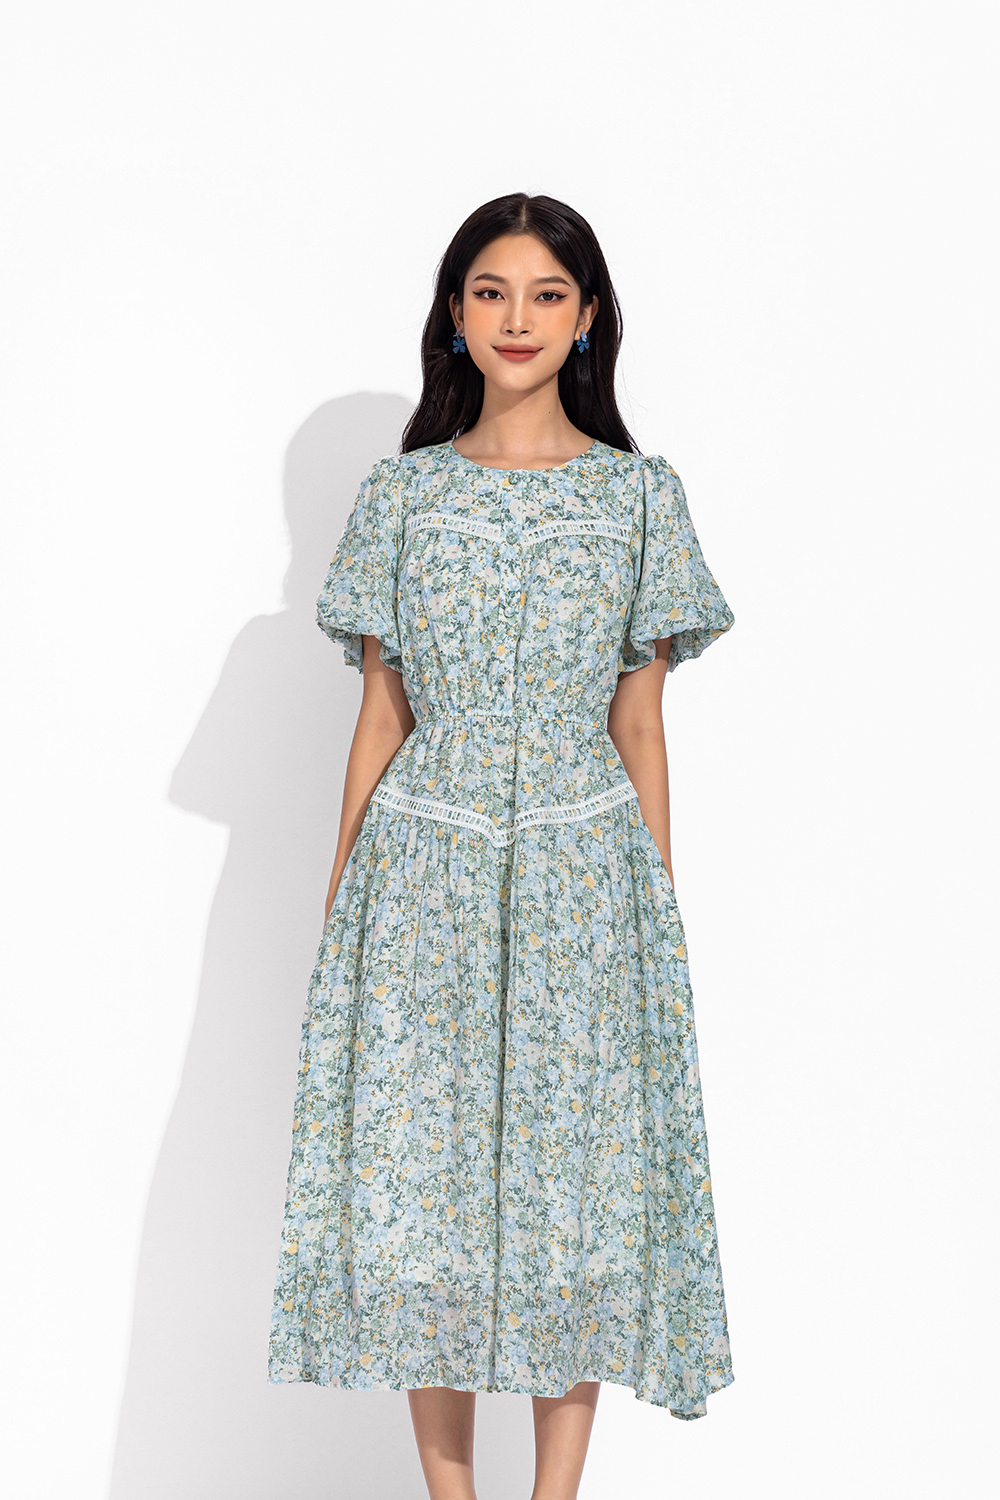 Đầm hoa nhí dáng xòe dài KK150-04 | Thời trang công sở K&K Fashion